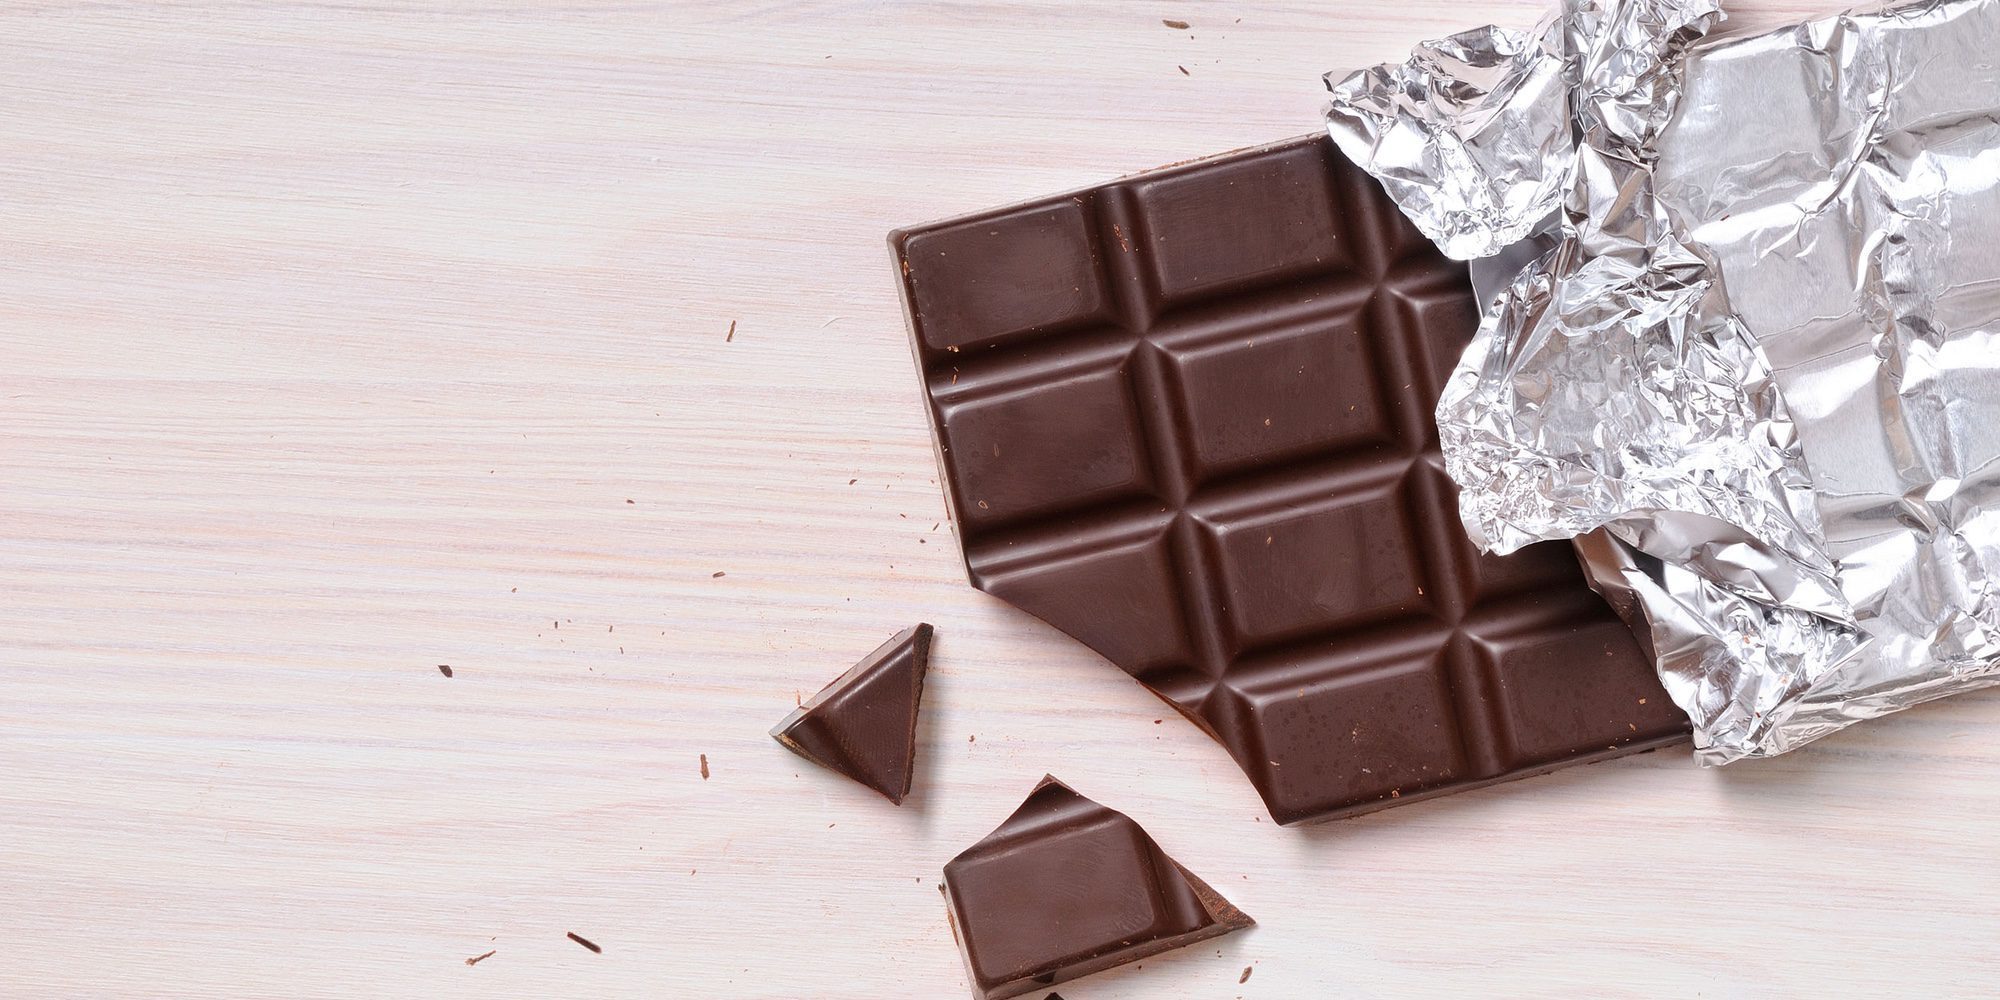 El chocolate tiene más azúcares añadidos que los refrescos